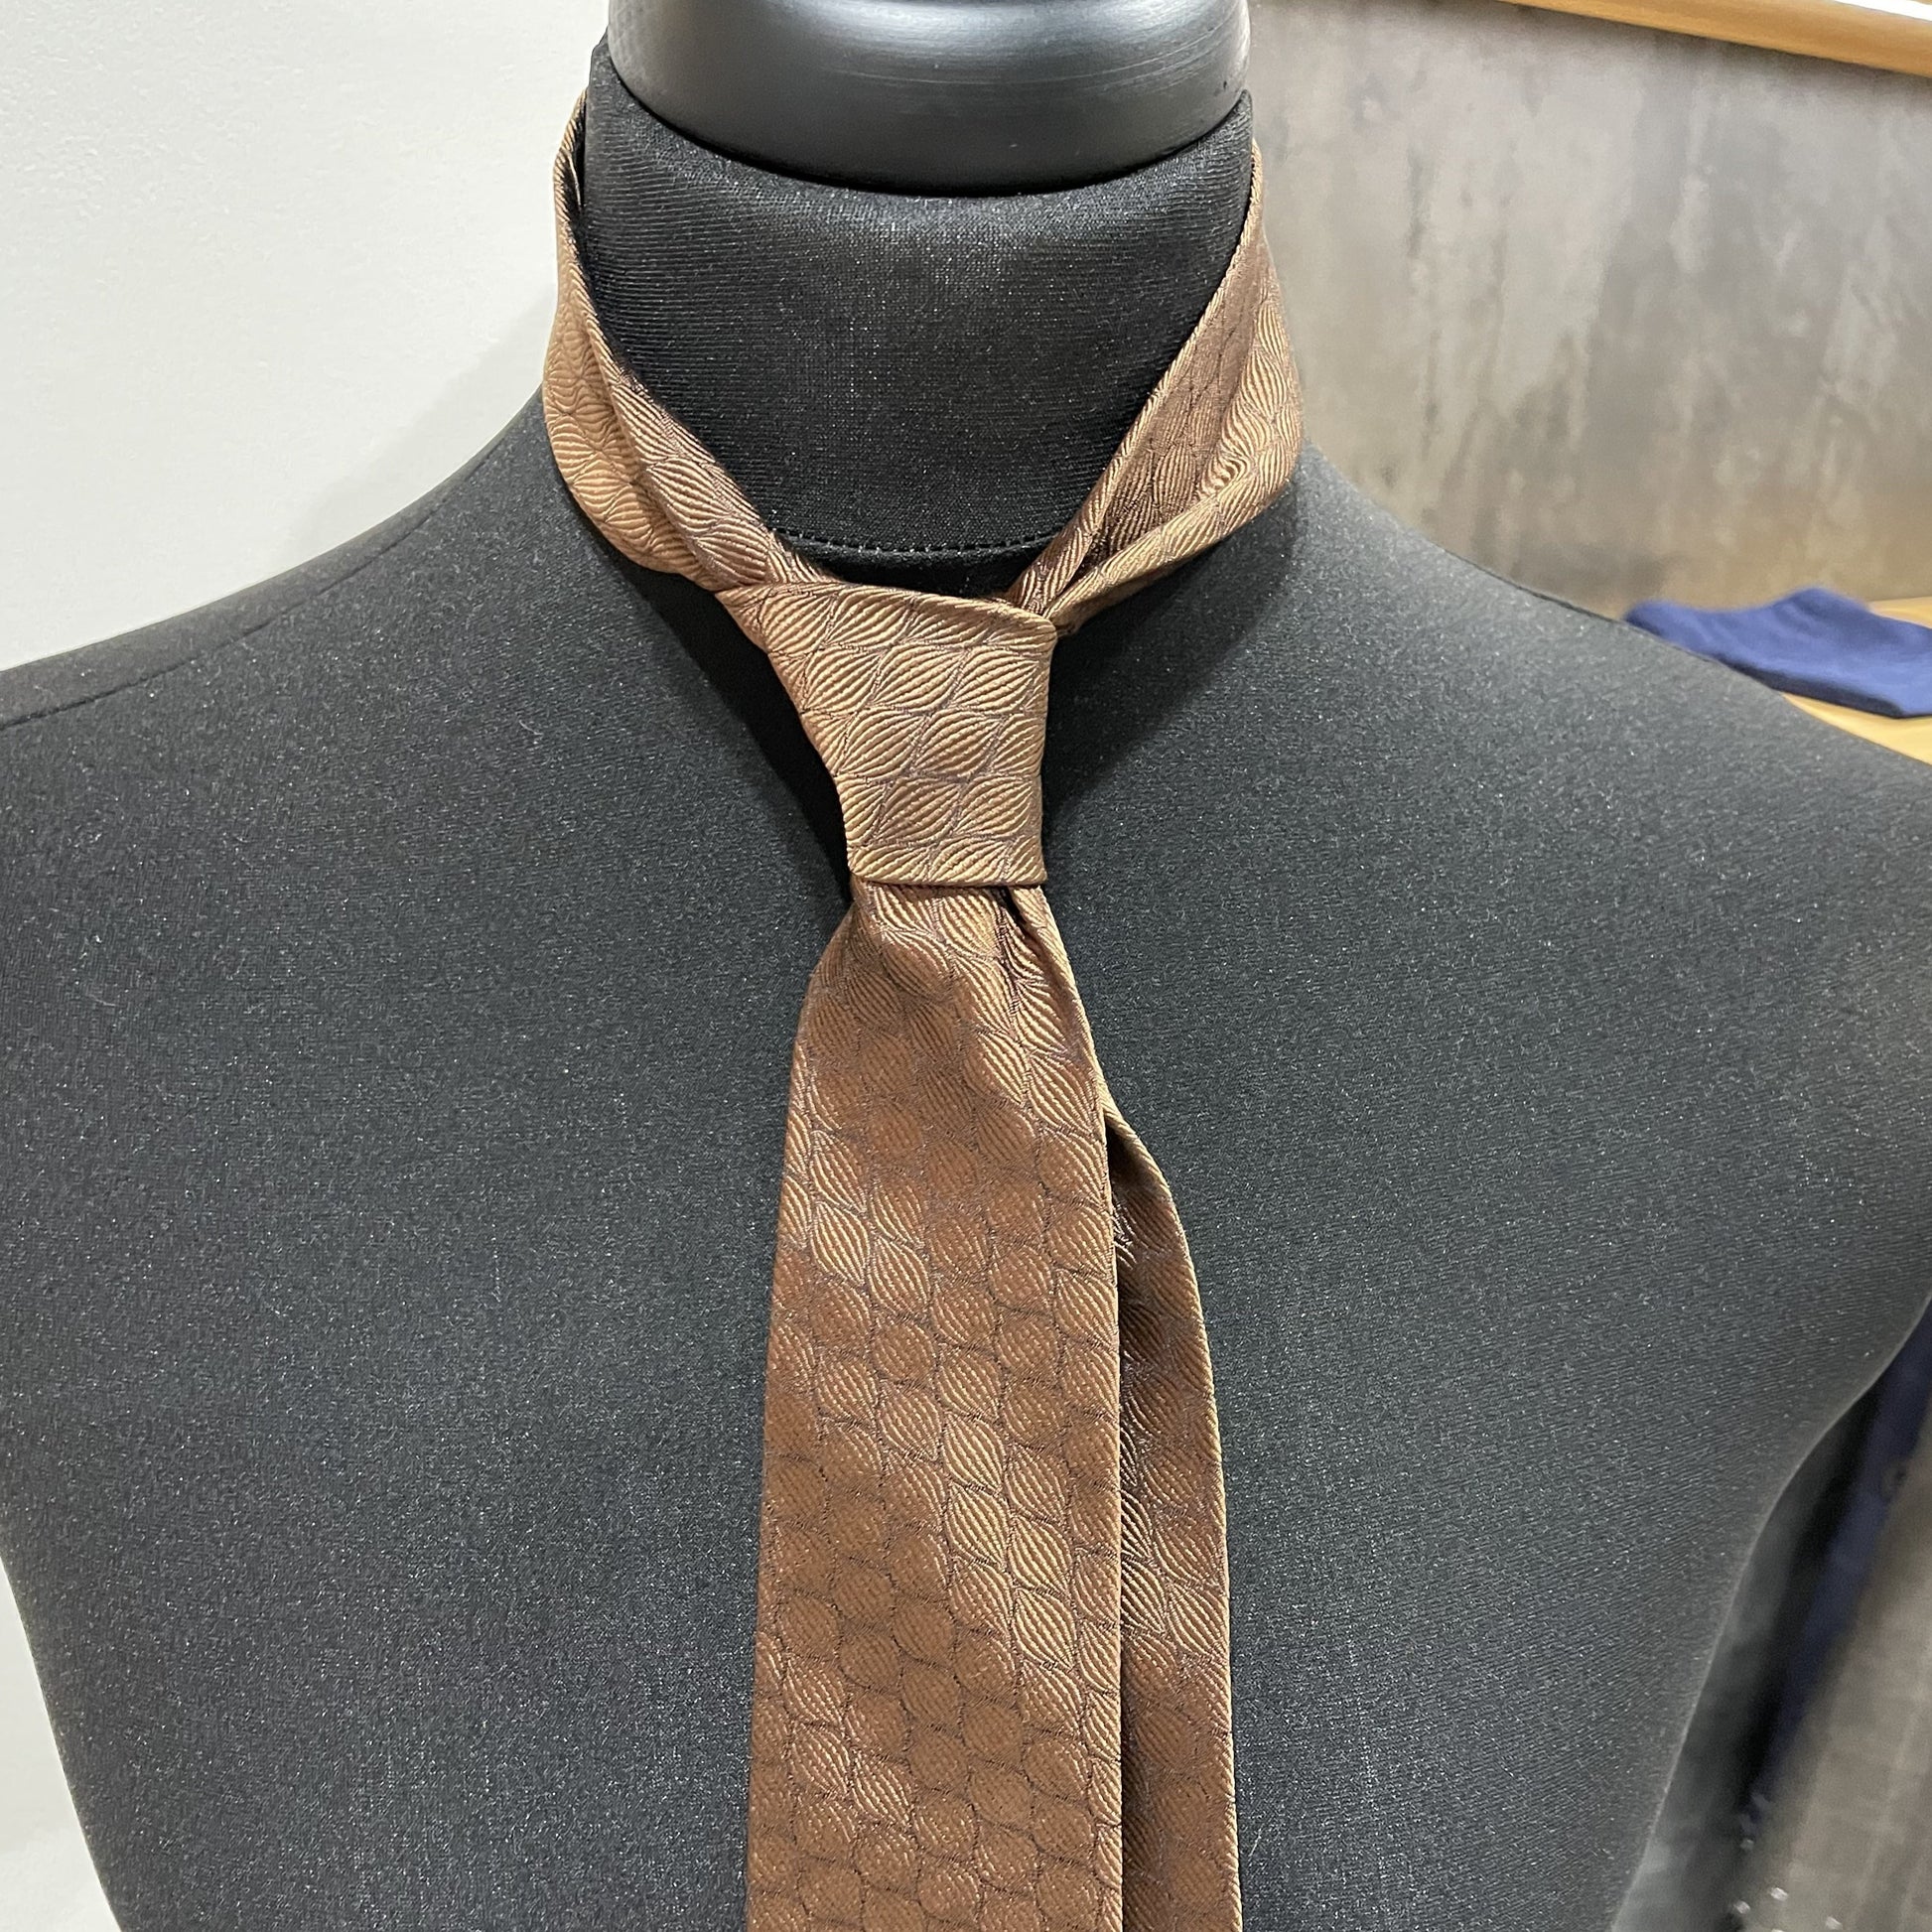 Ručně šitá hedvábná kravata - bronzová JDobias-tailoring